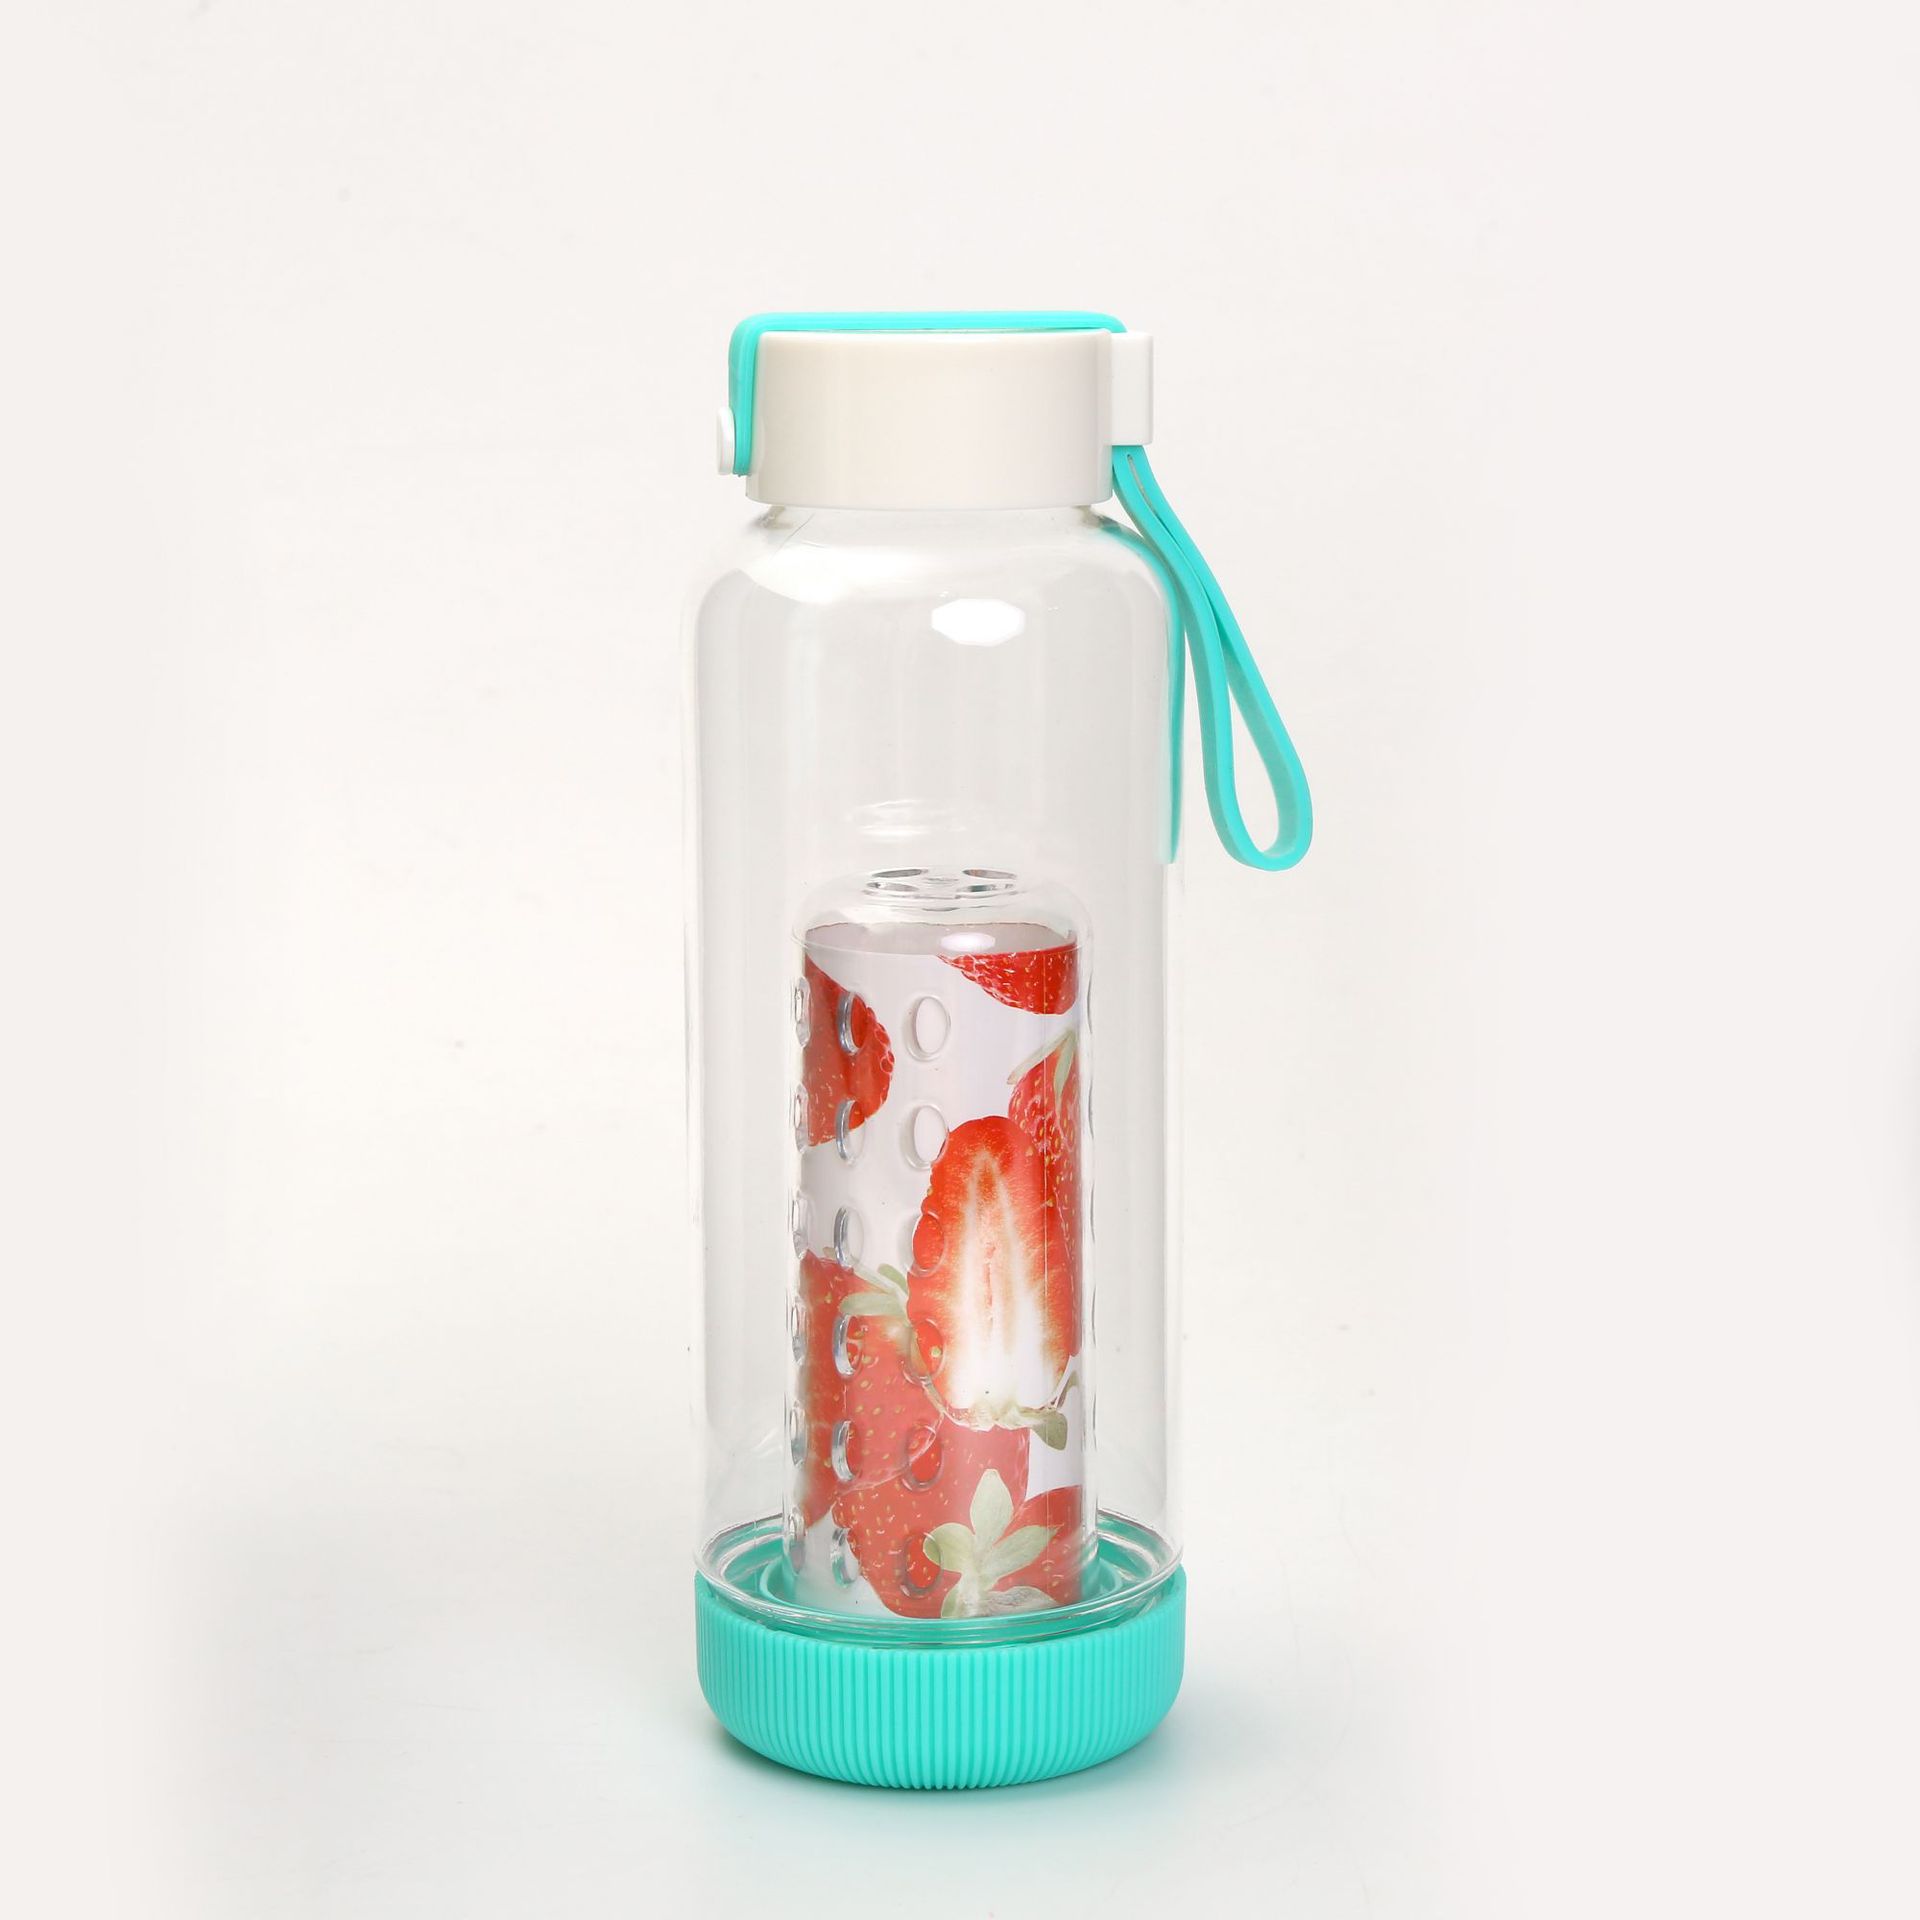 名创优品简约提手透明创意礼品溢彩榨汁水果塑料杯500ml